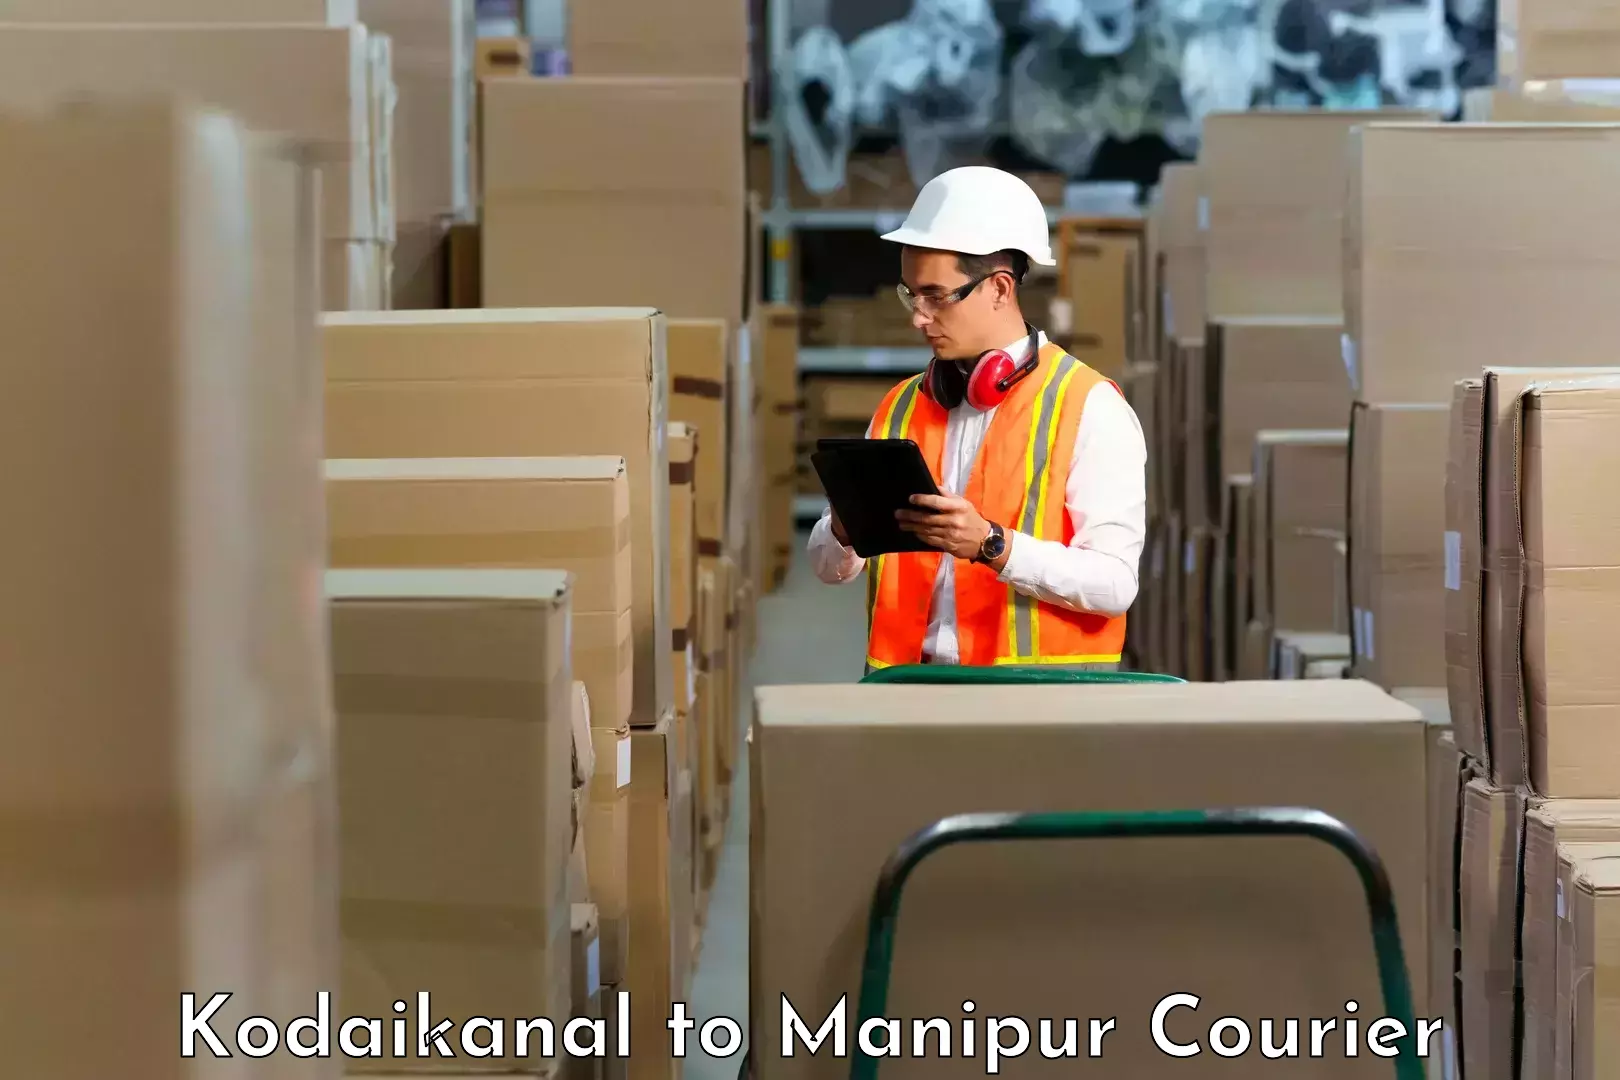 Express logistics service Kodaikanal to Manipur